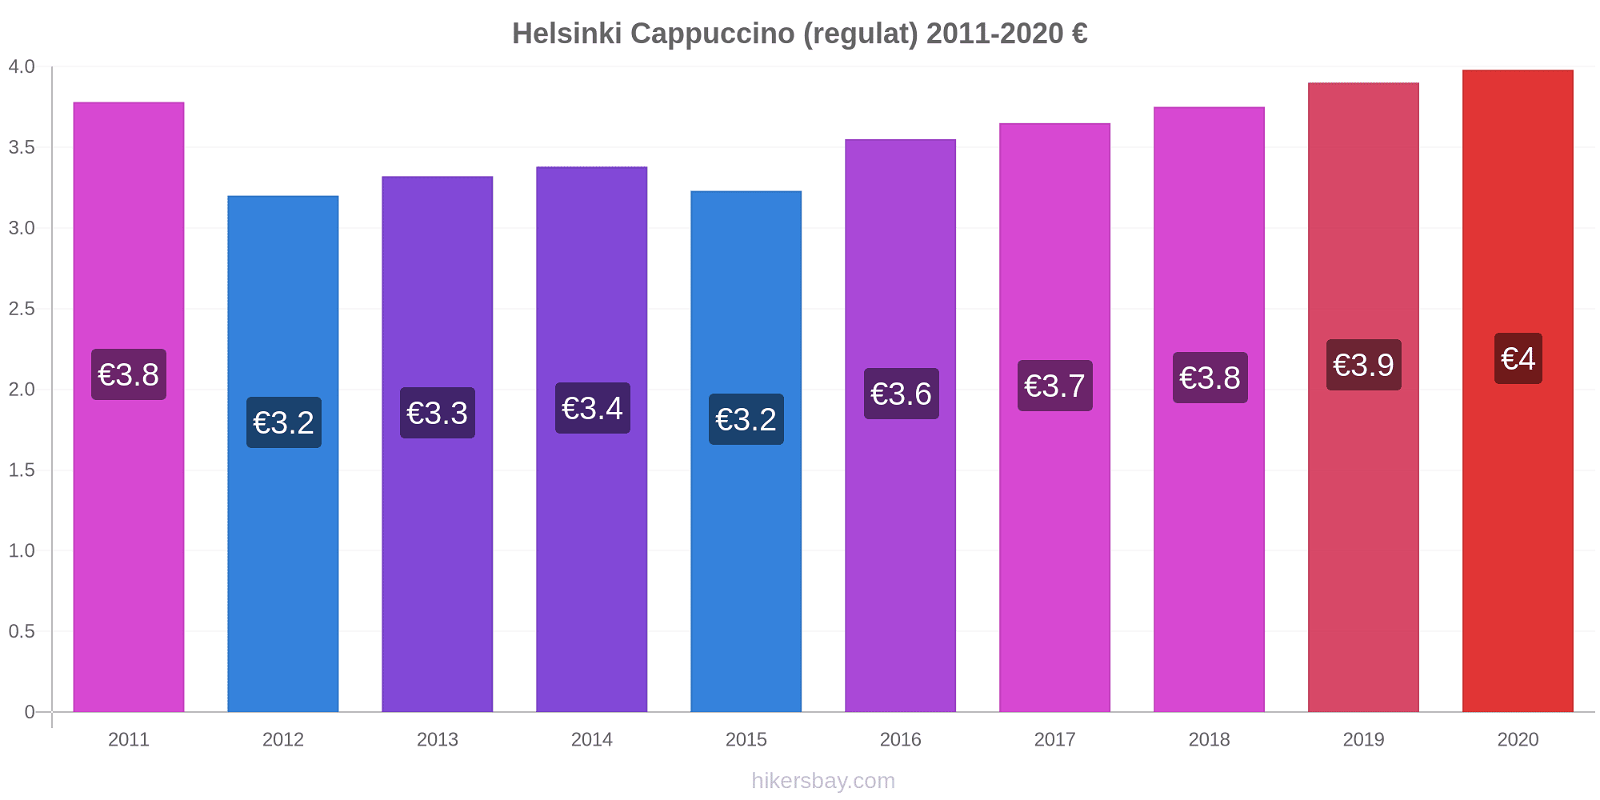 Helsinki modificări de preț Cappuccino (regulat) hikersbay.com